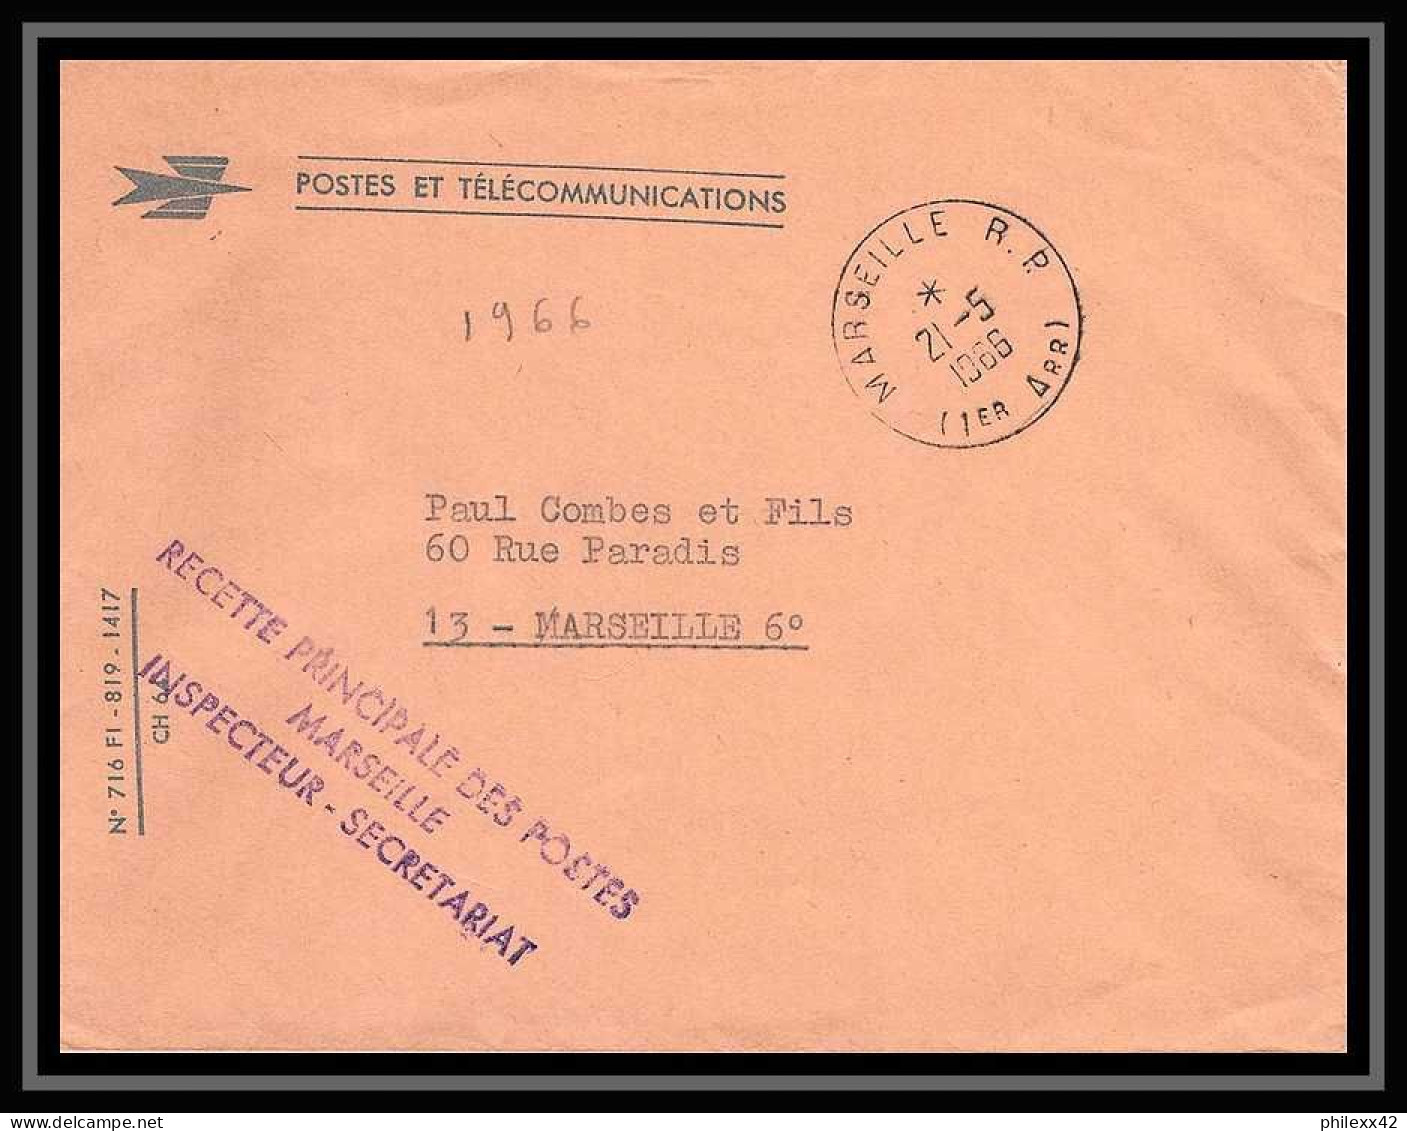 115488 lot de 11 Lettres cover Carte postale (postcard) avis de reception Bouches du rhone Marseille RP 16